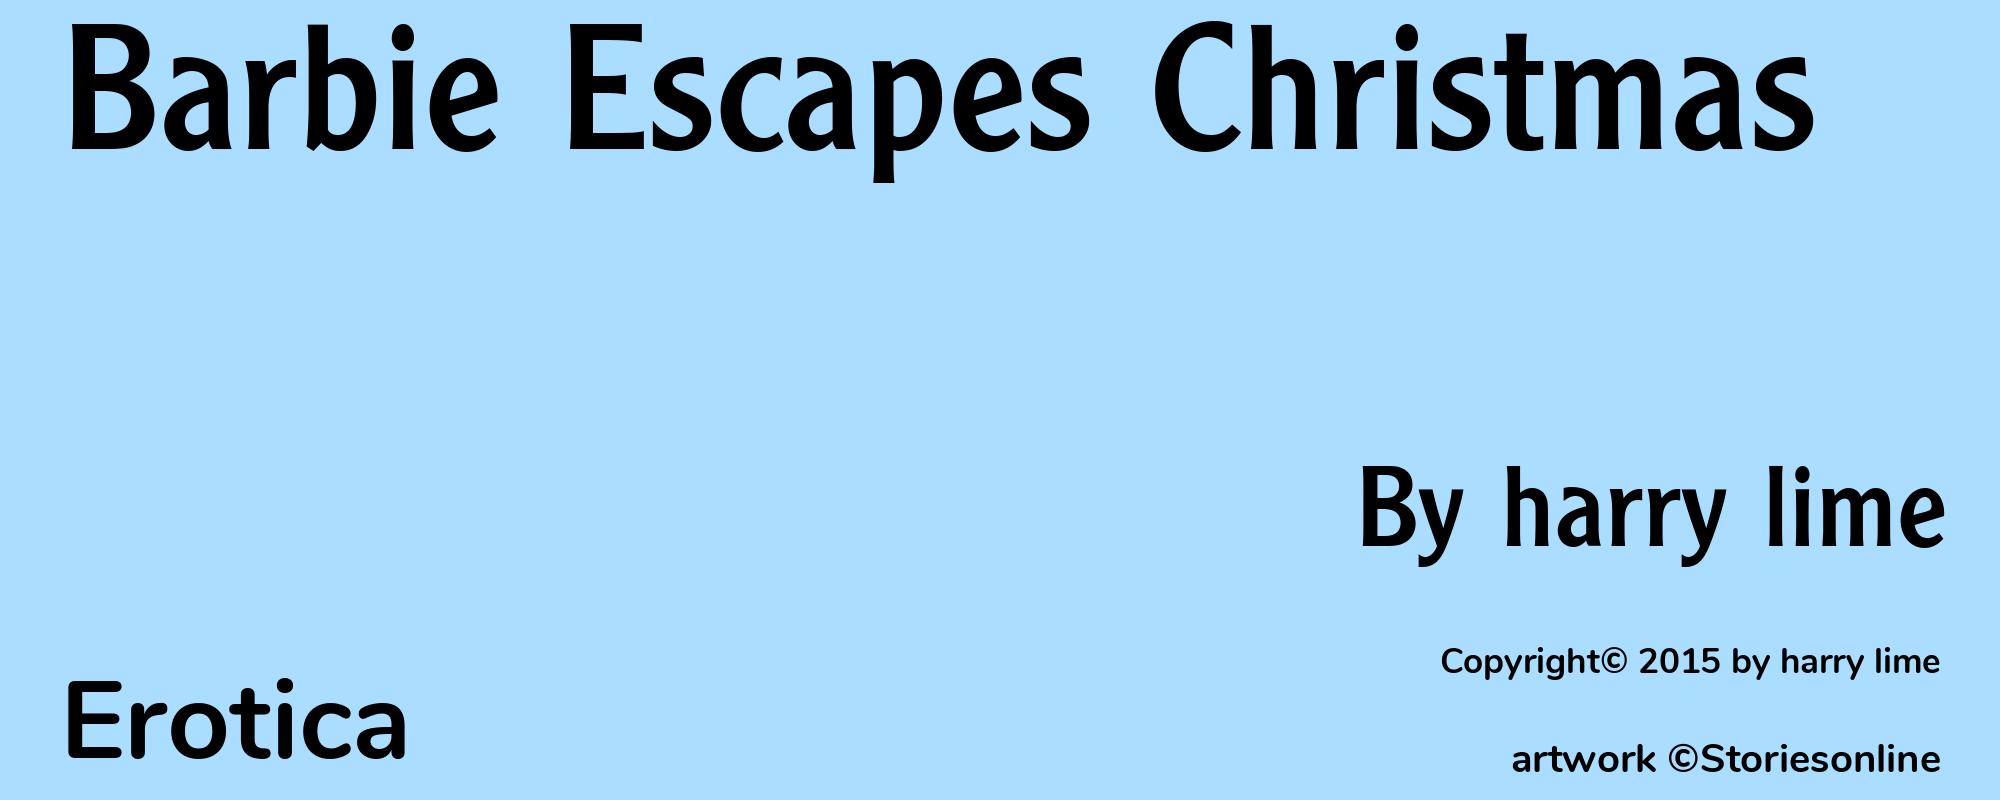 Barbie Escapes Christmas - Cover